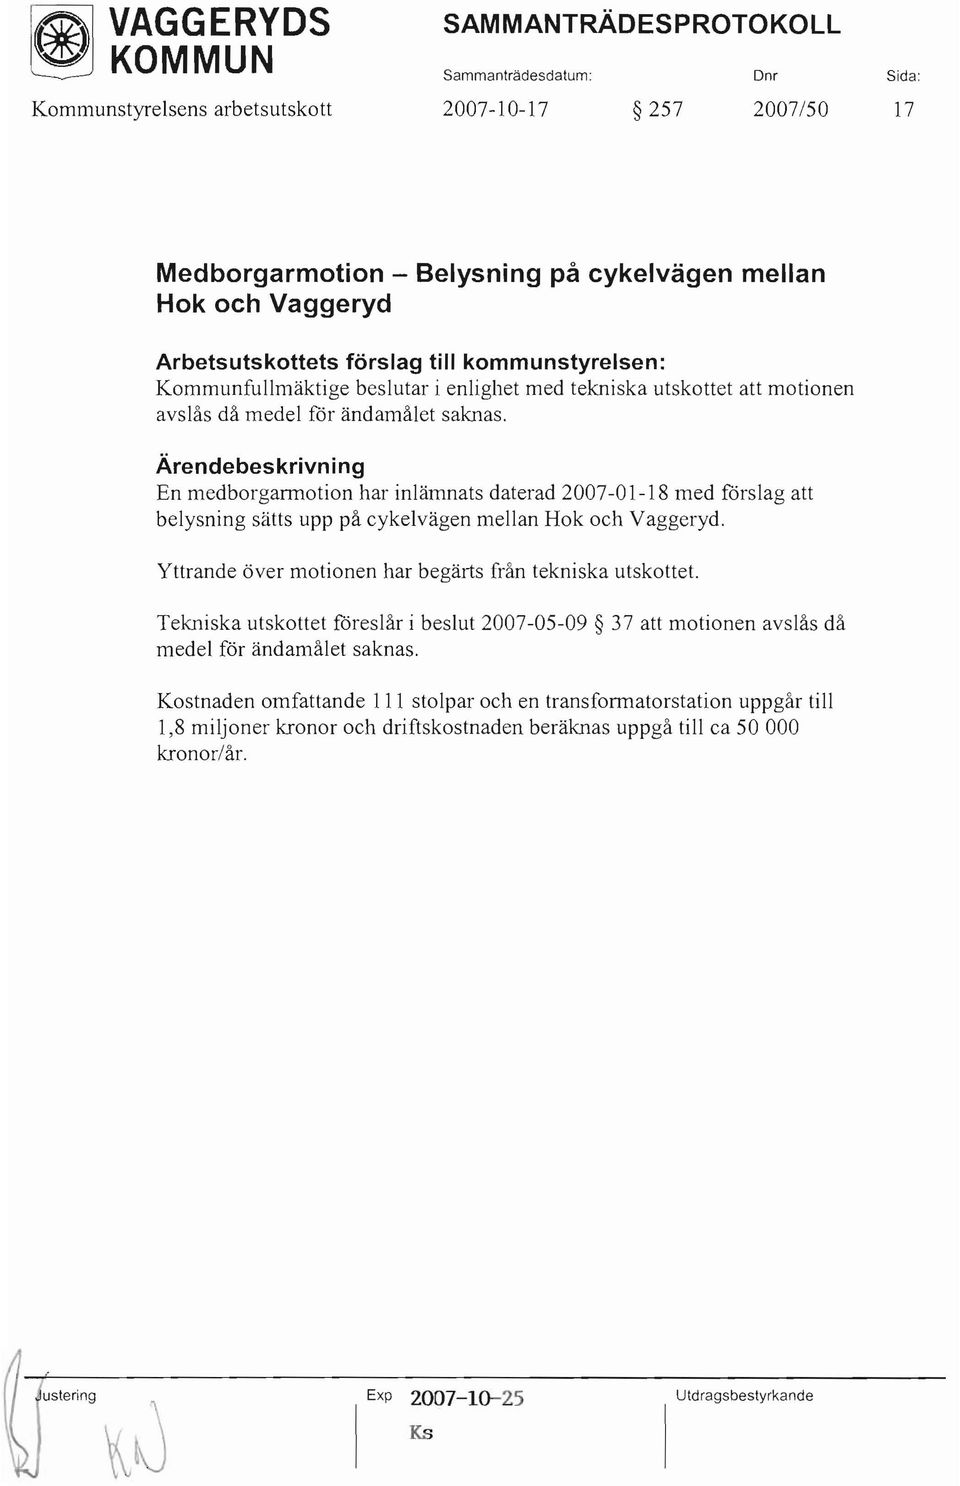 En medborgarmotion har inlämnats daterad 2007-0 1-18 med förslag att belysning sätts upp på cykelvägen mellan Hok och Vaggeryd. Yttrande över motionen har begärts från tekniska utskottet.